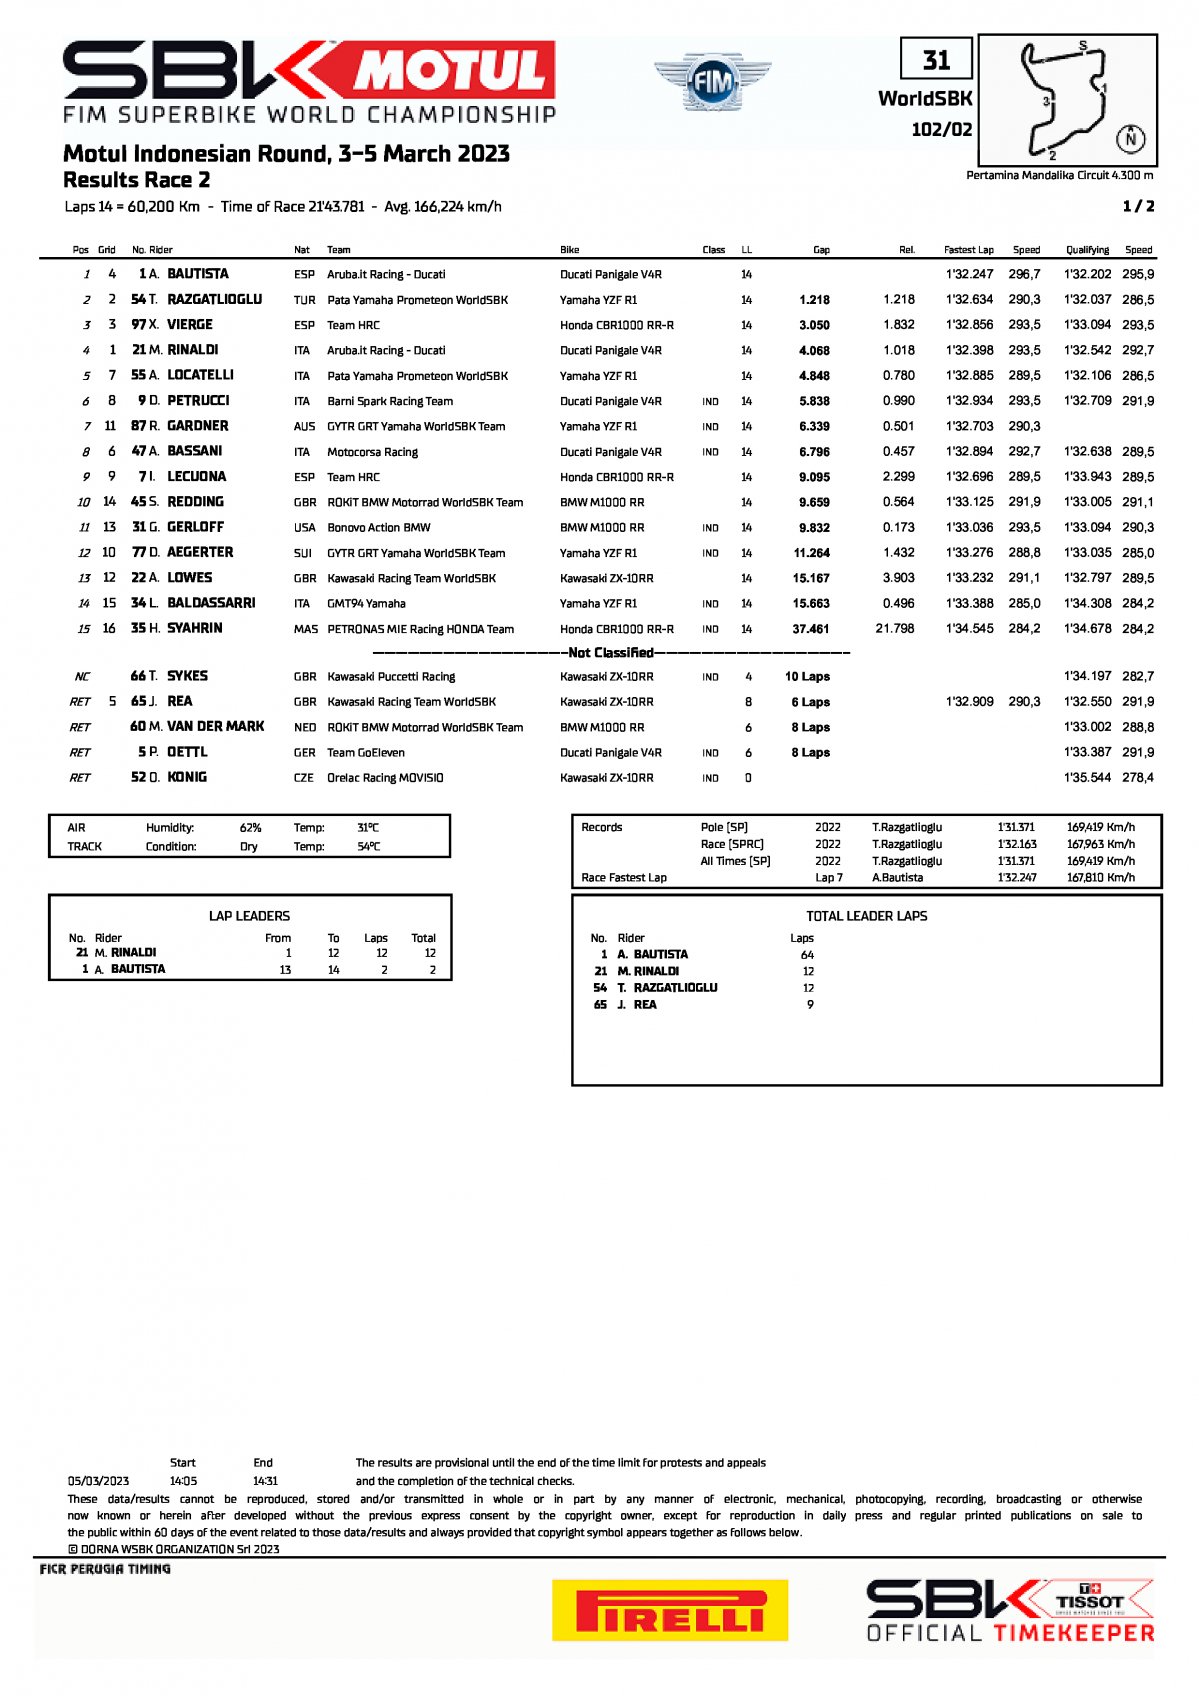 Результаты 2 гонки IDNWorldSBK, Mandalika (5/03/2023)